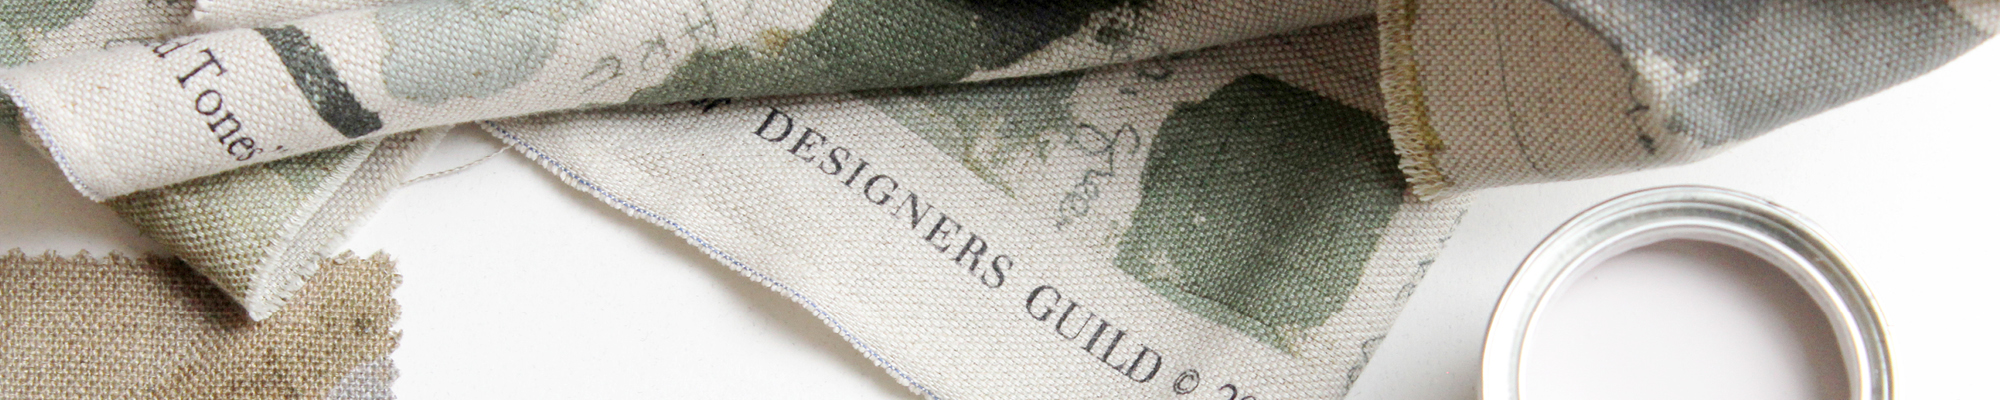 Designers Guild fabric